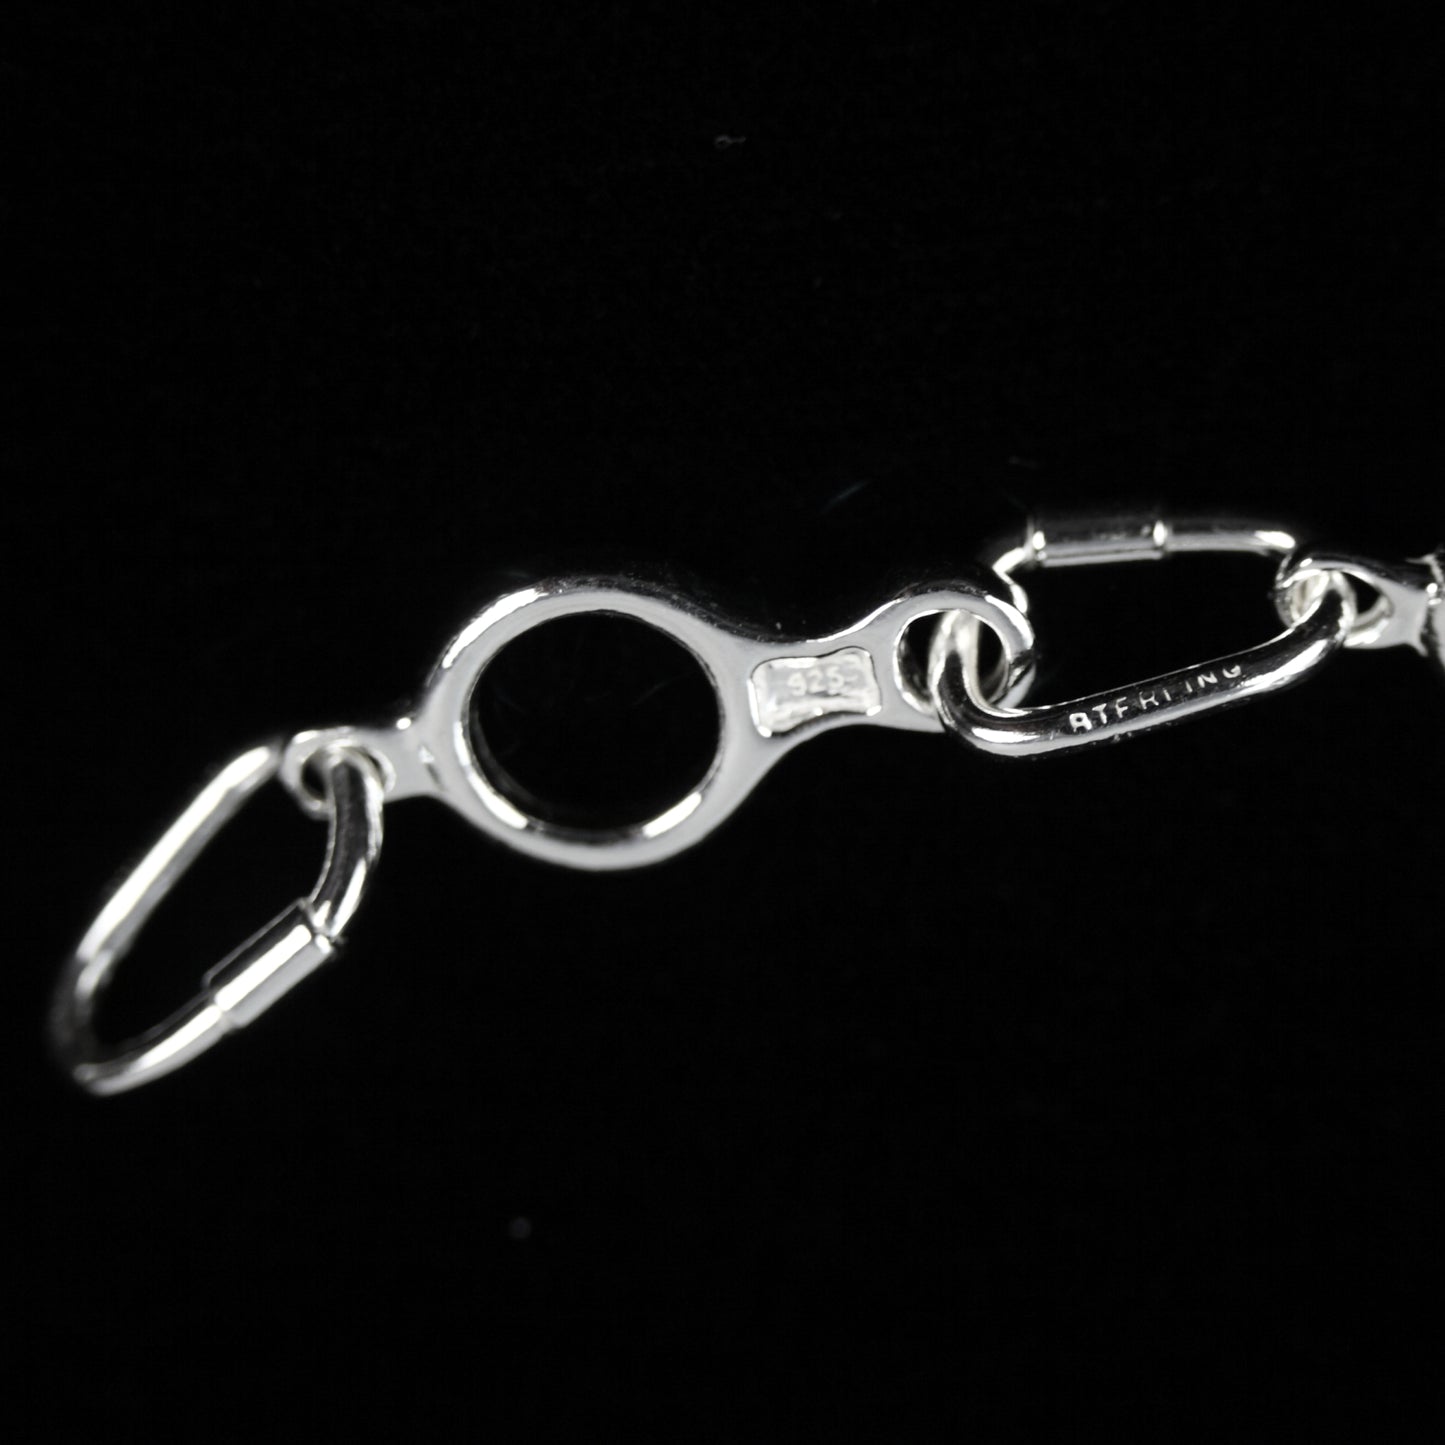 Figure 8 Descender Linked Bracelet - Handmade in sterling silver - Detail